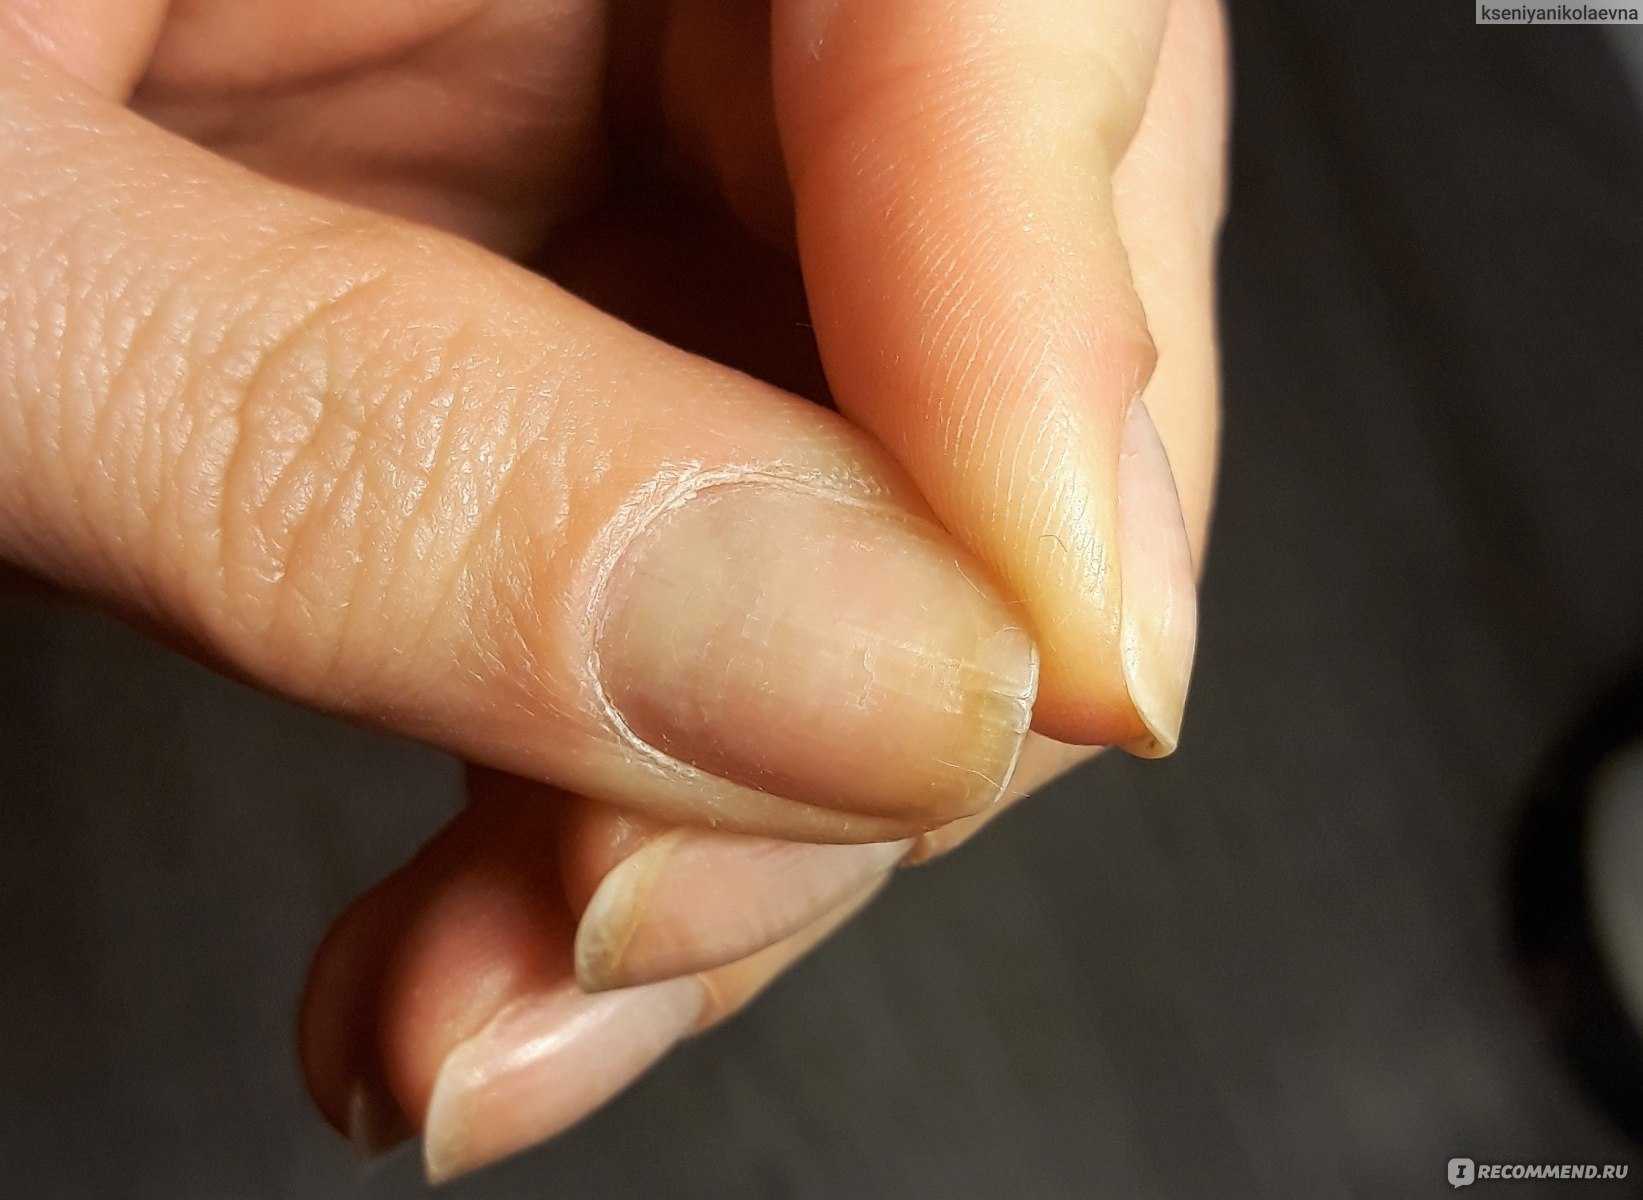 Почему шеллак не держится на ногтях долго: основные причины и рекомендации